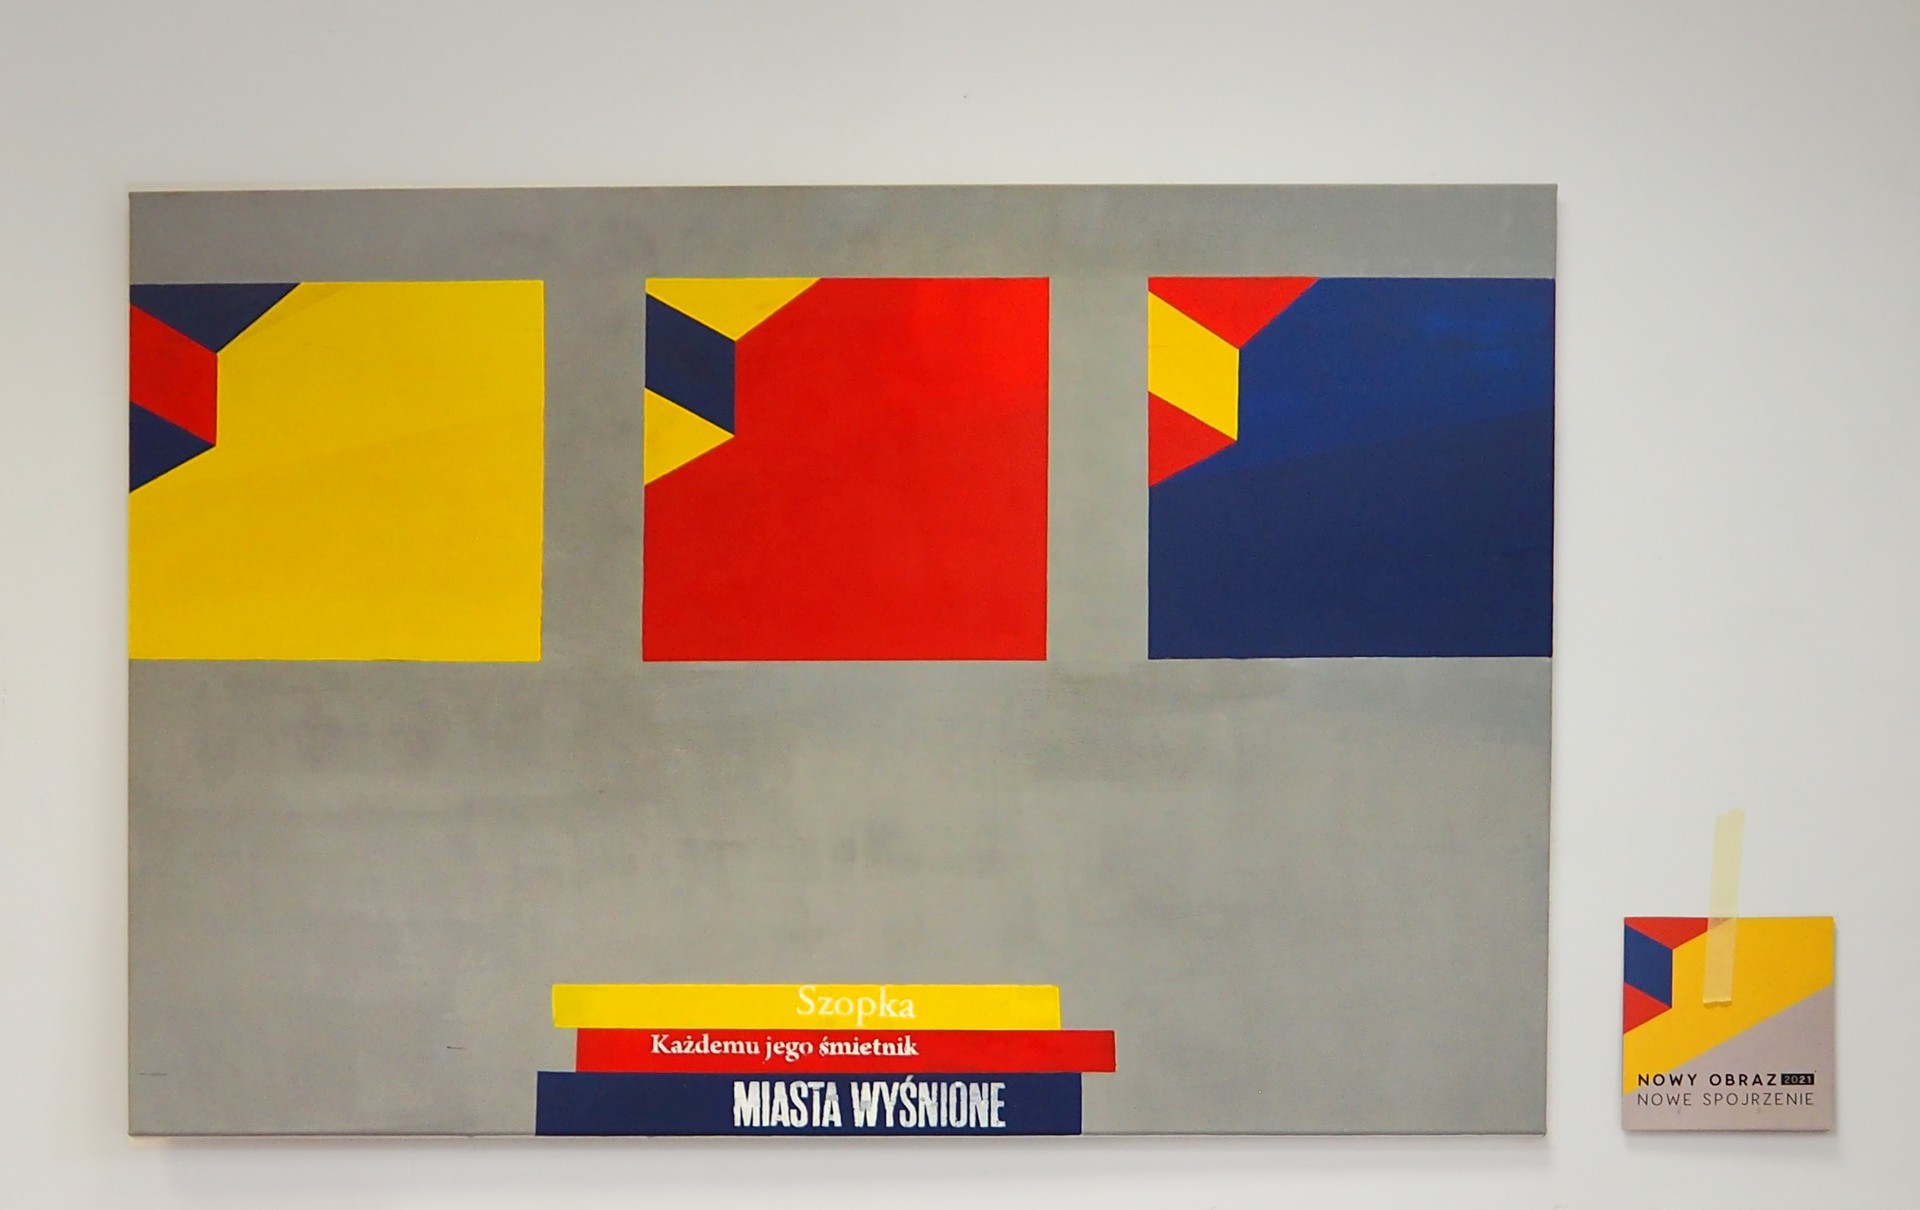 Obraz przedstawia trzy kwadraty w kolorach podstawowych: czerwonym, żółtym i niebieskim.